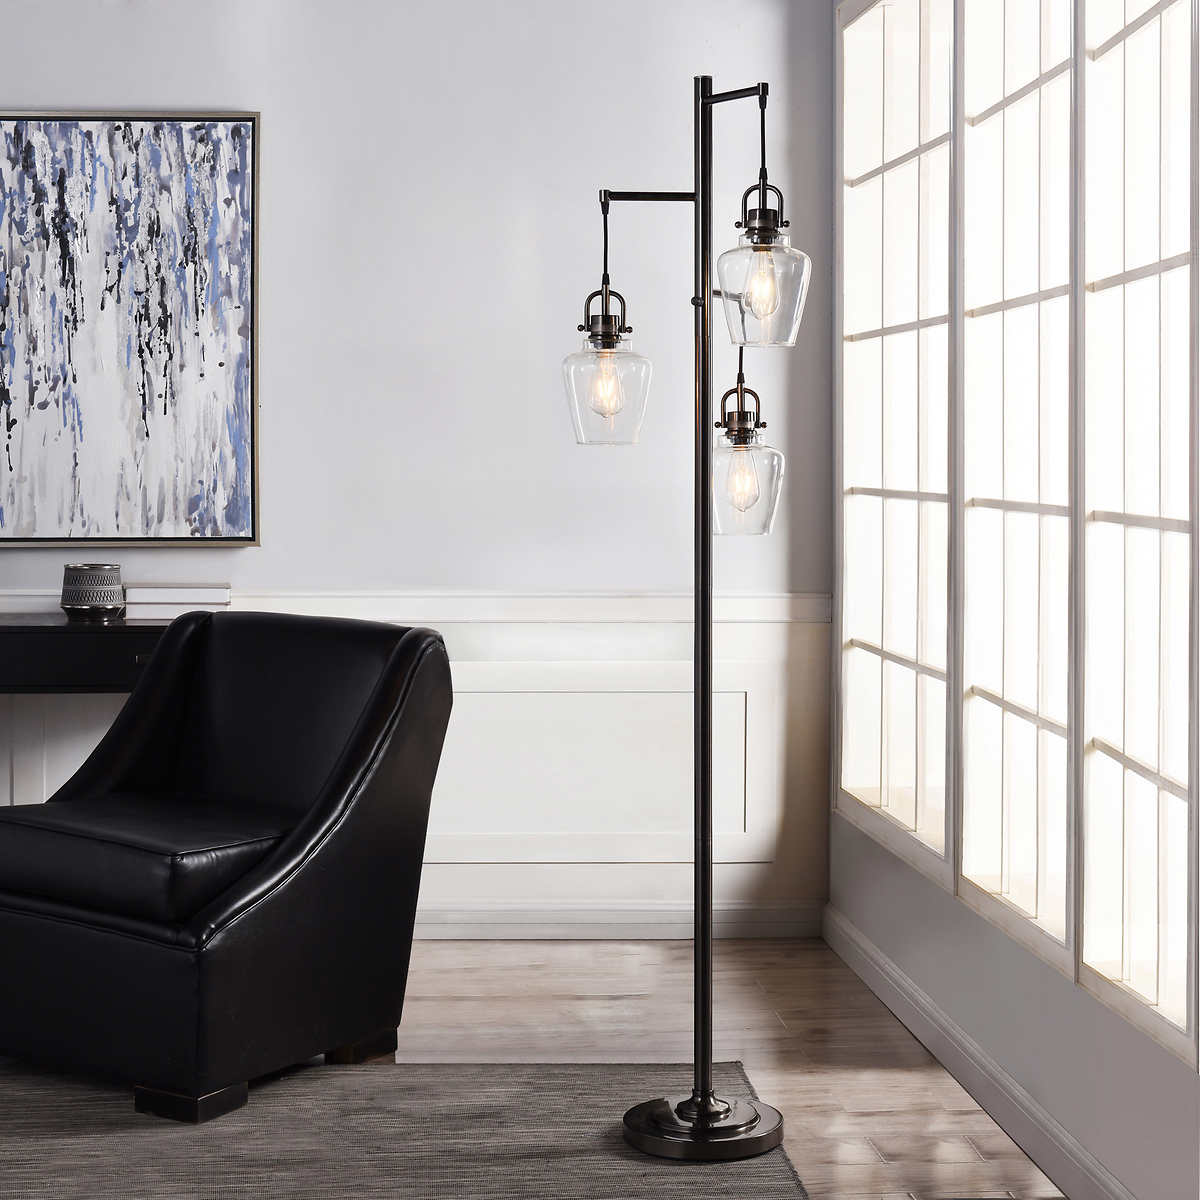 Basia 3 Light Floor Lamp Costco, 3 Way Floor Lamps For Living Room